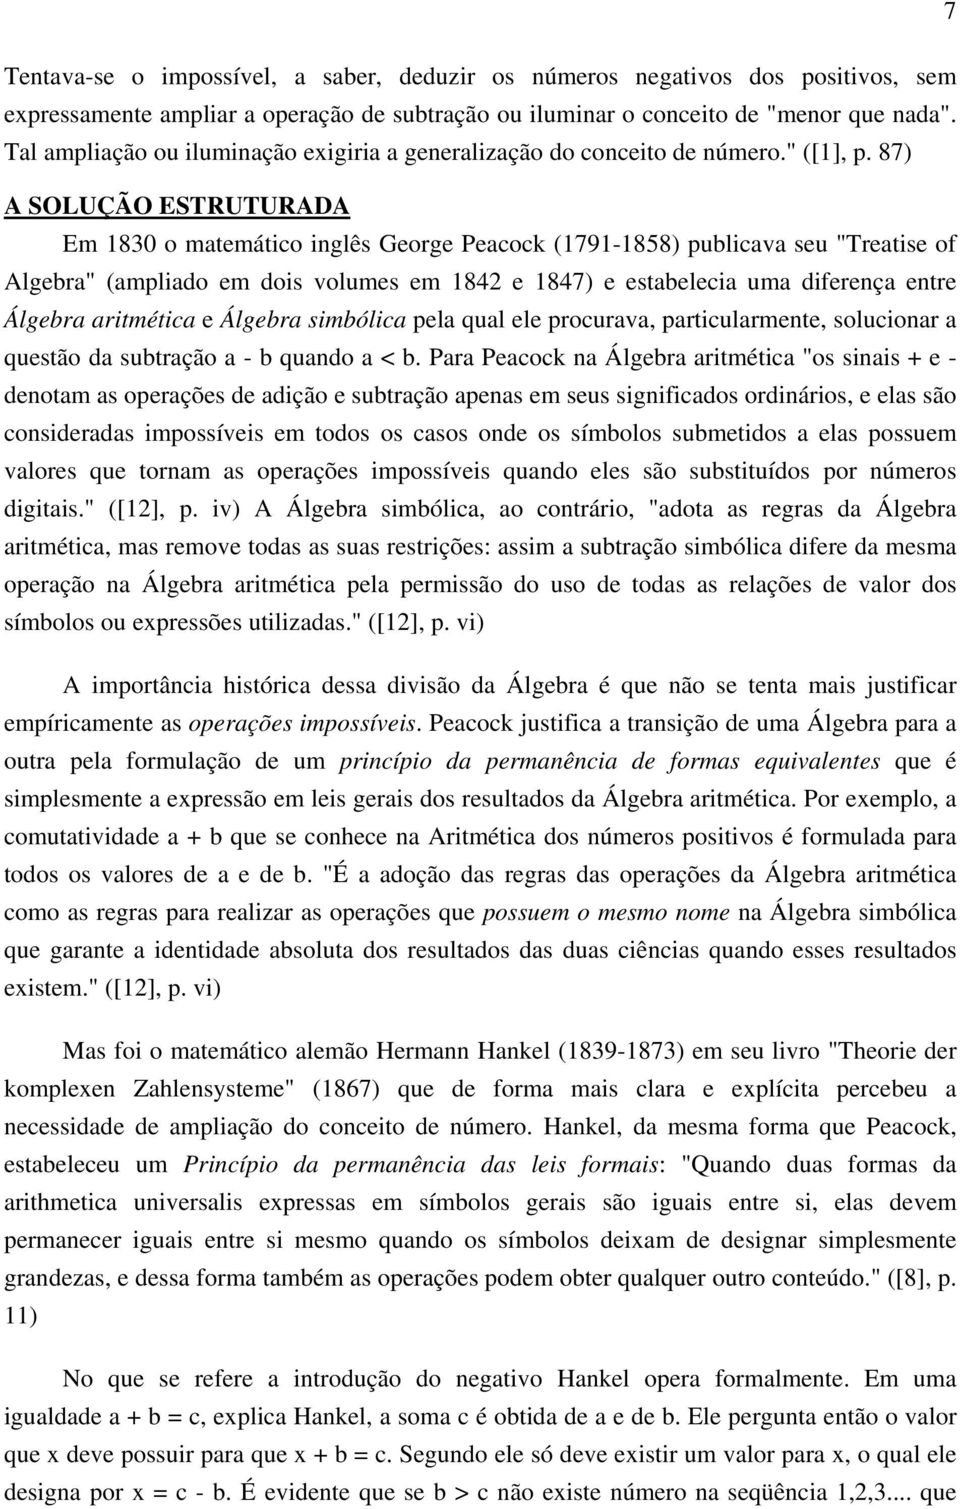 87) A SOLUÇÃO ESTRUTURADA Em 1830 o matemático inglês George Peacock (1791-1858) publicava seu "Treatise of Algebra" (ampliado em dois volumes em 1842 e 1847) e estabelecia uma diferença entre